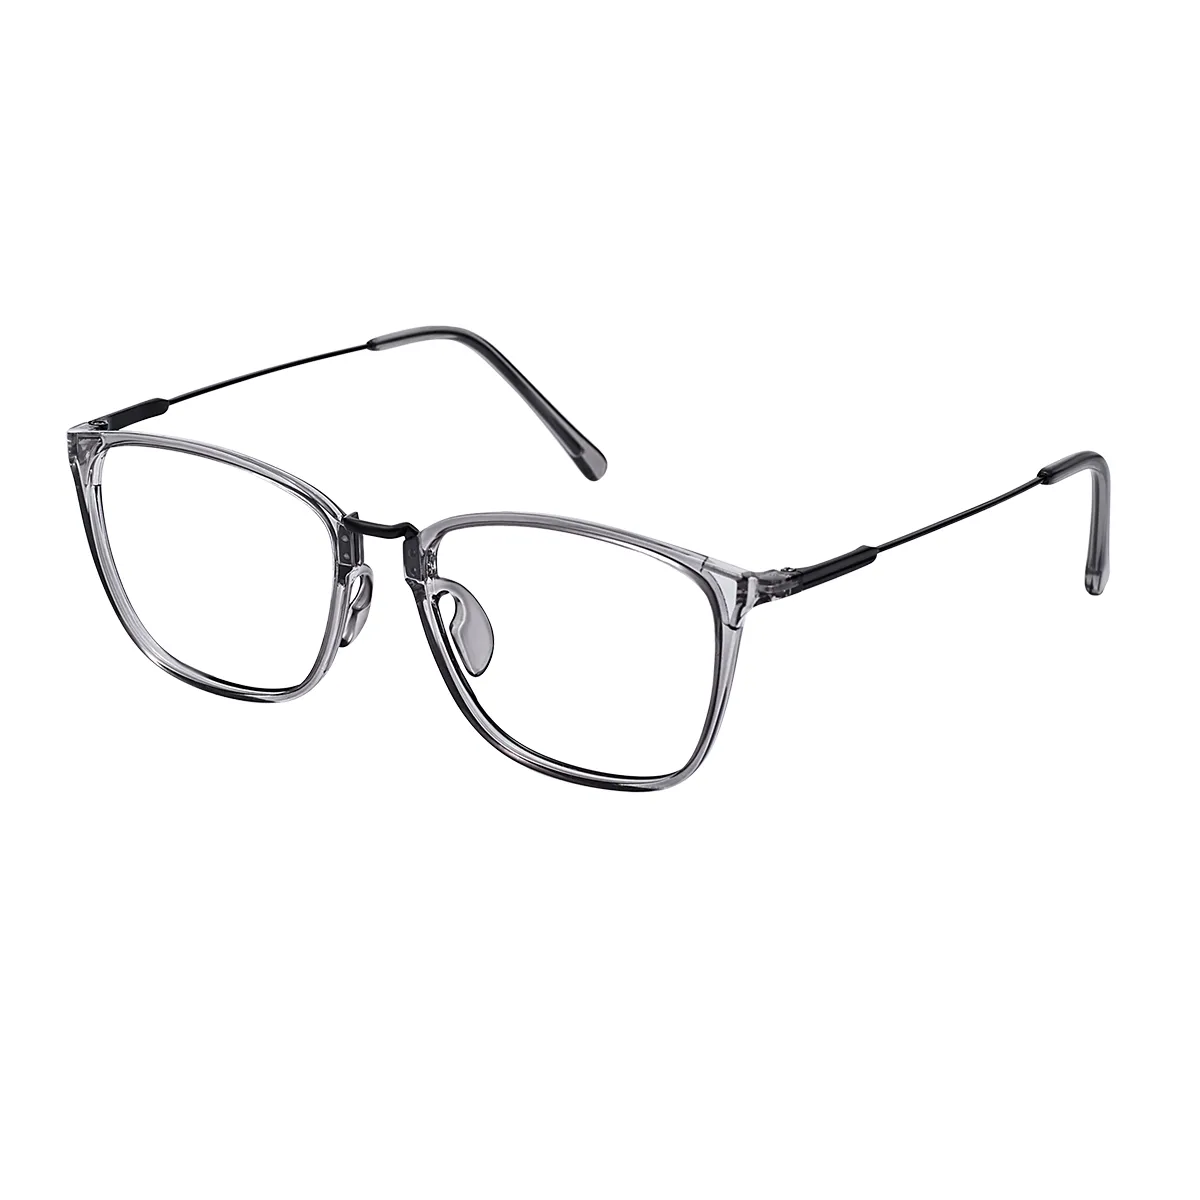 Dunlap - Rectangle Gray Glasses for Men & Women - EFE